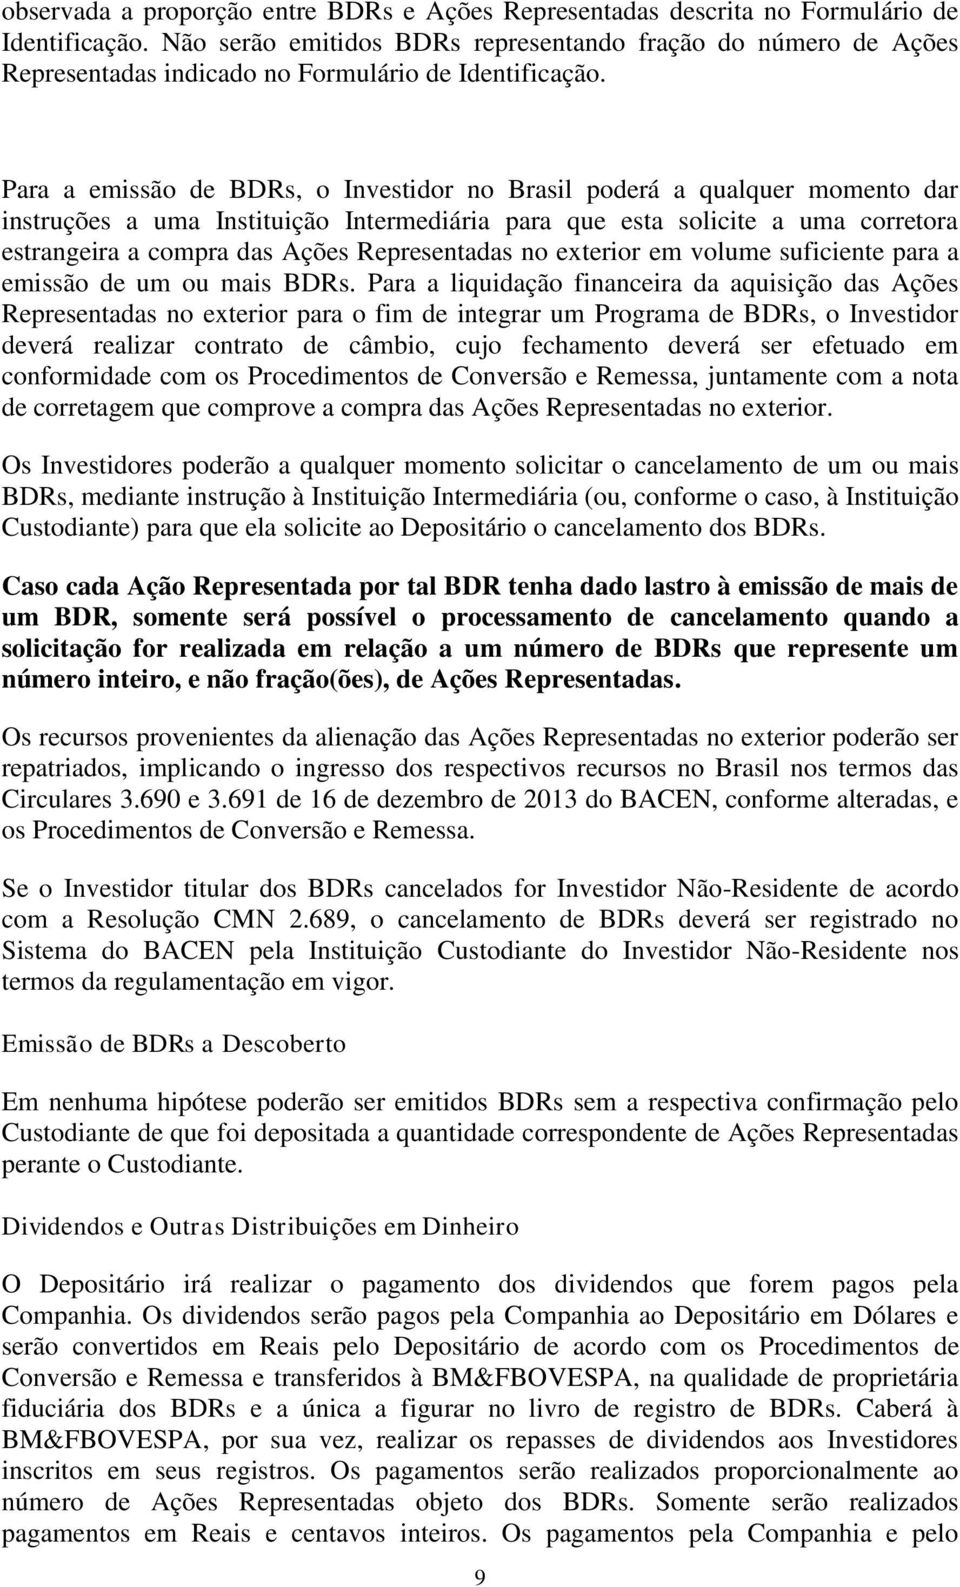 Para a emissão de BDRs, o Investidor no Brasil poderá a qualquer momento dar instruções a uma Instituição Intermediária para que esta solicite a uma corretora estrangeira a compra das Ações